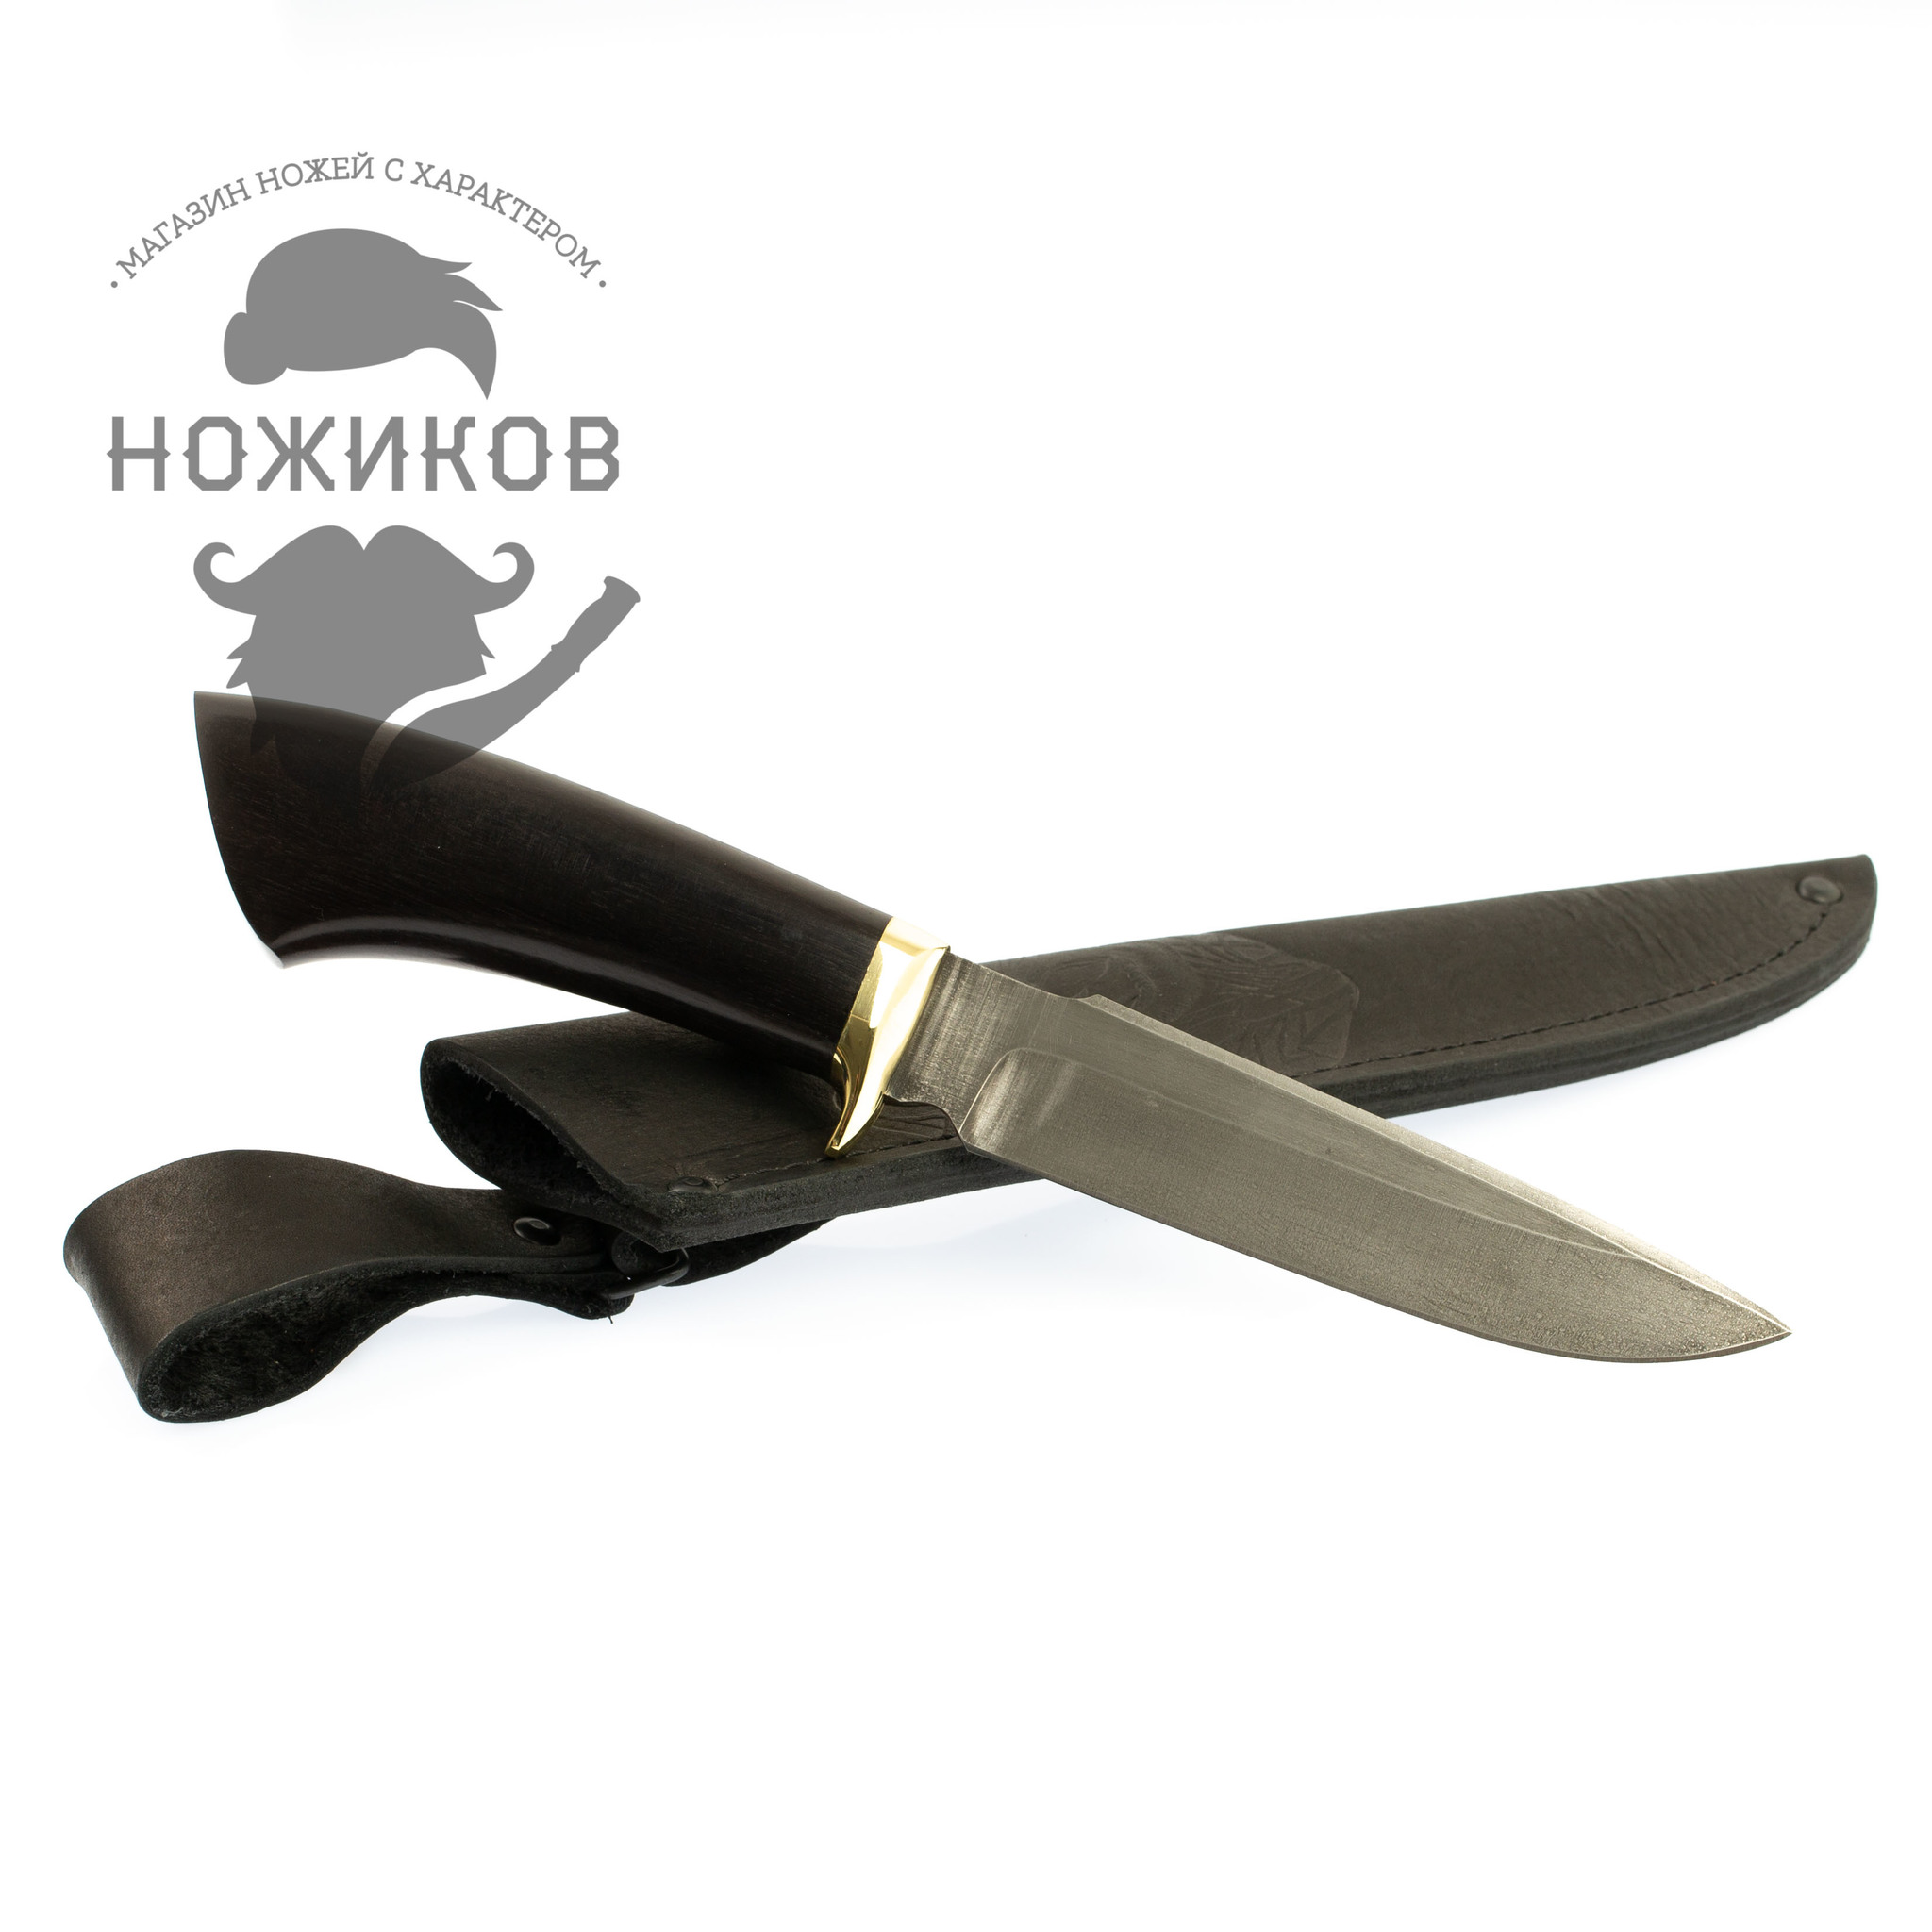 Нож Охотник-2, сталь ХВ5, граб от Ножиков